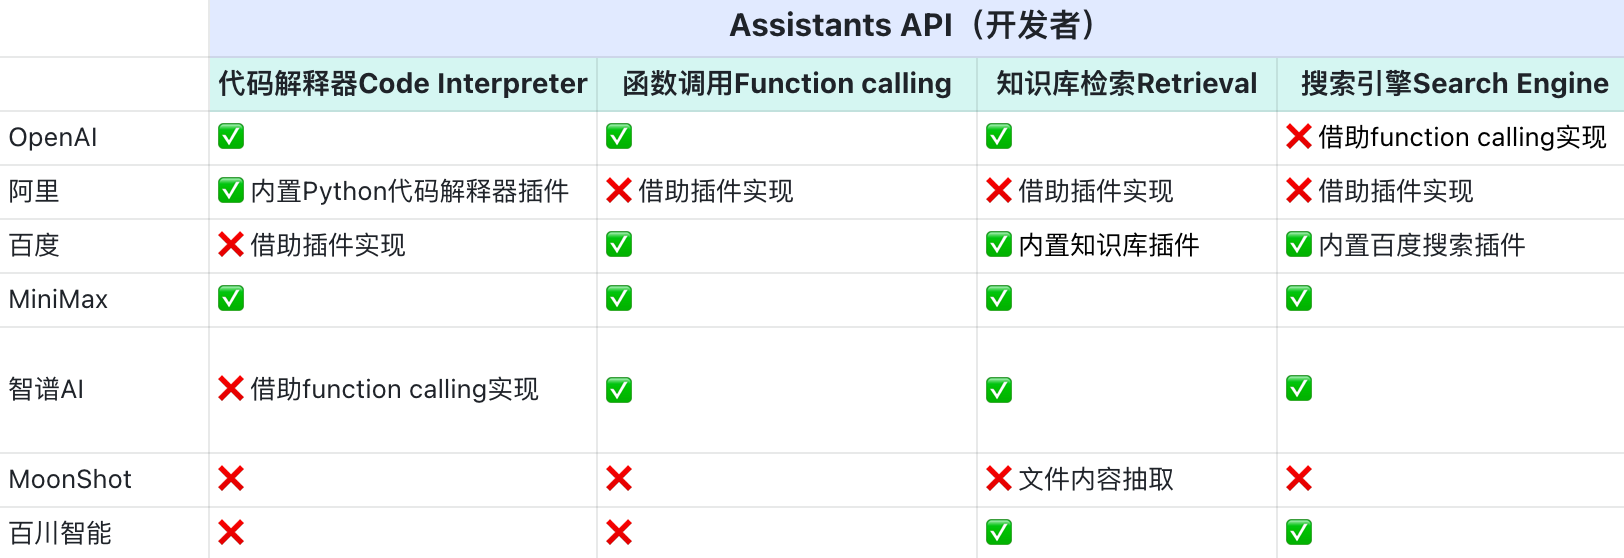 Assistants API能力支持